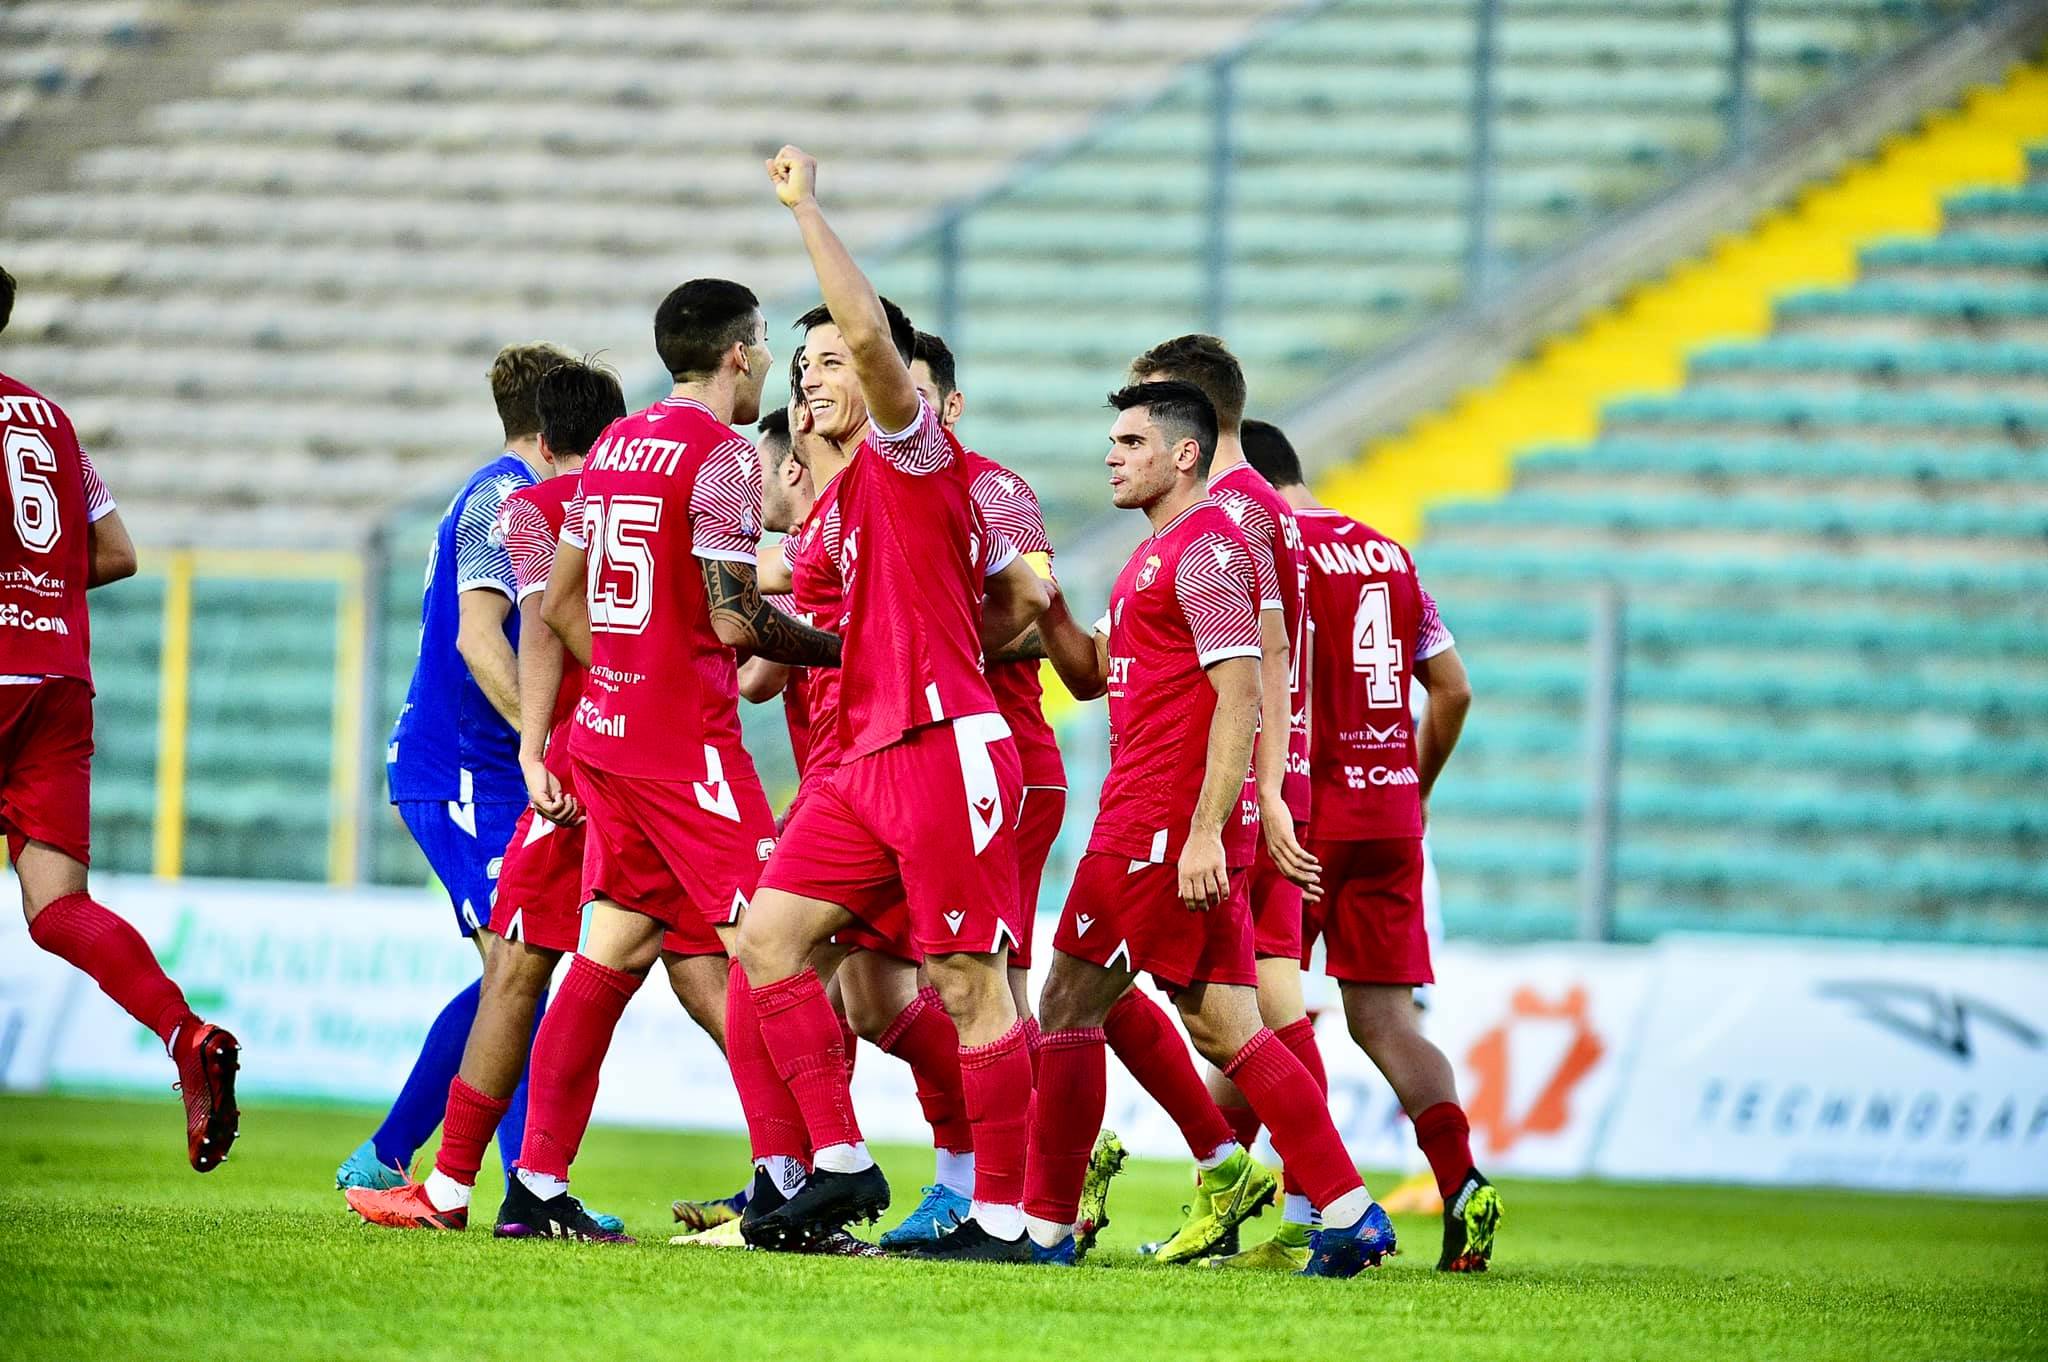 Ancona Matelica, al Del Conero battuto 2-0 l’Aquila Montevarchi